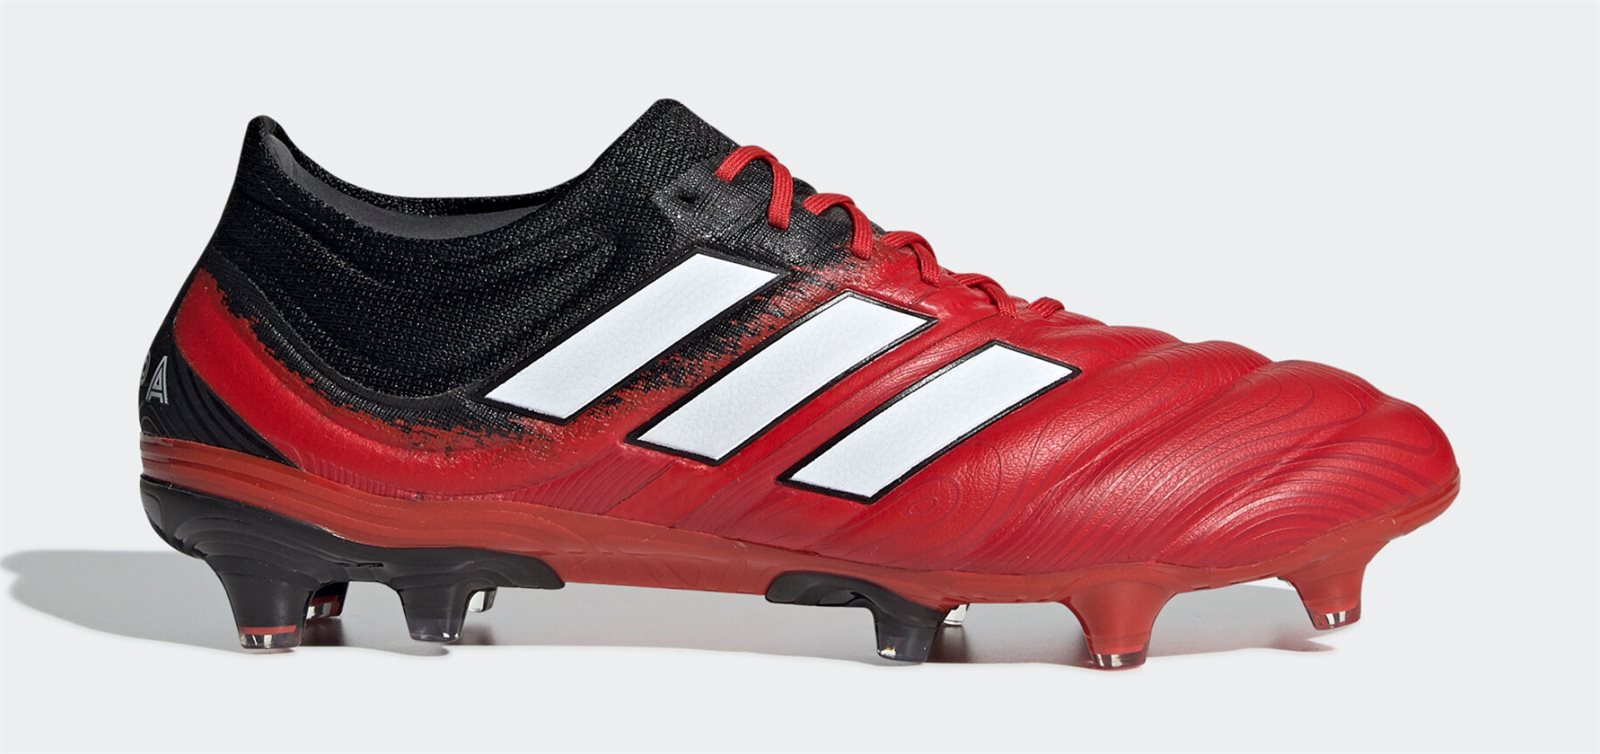 Adidas Copa là dòng giày bóng đá da thật được nhiều cầu thủ sử dụng